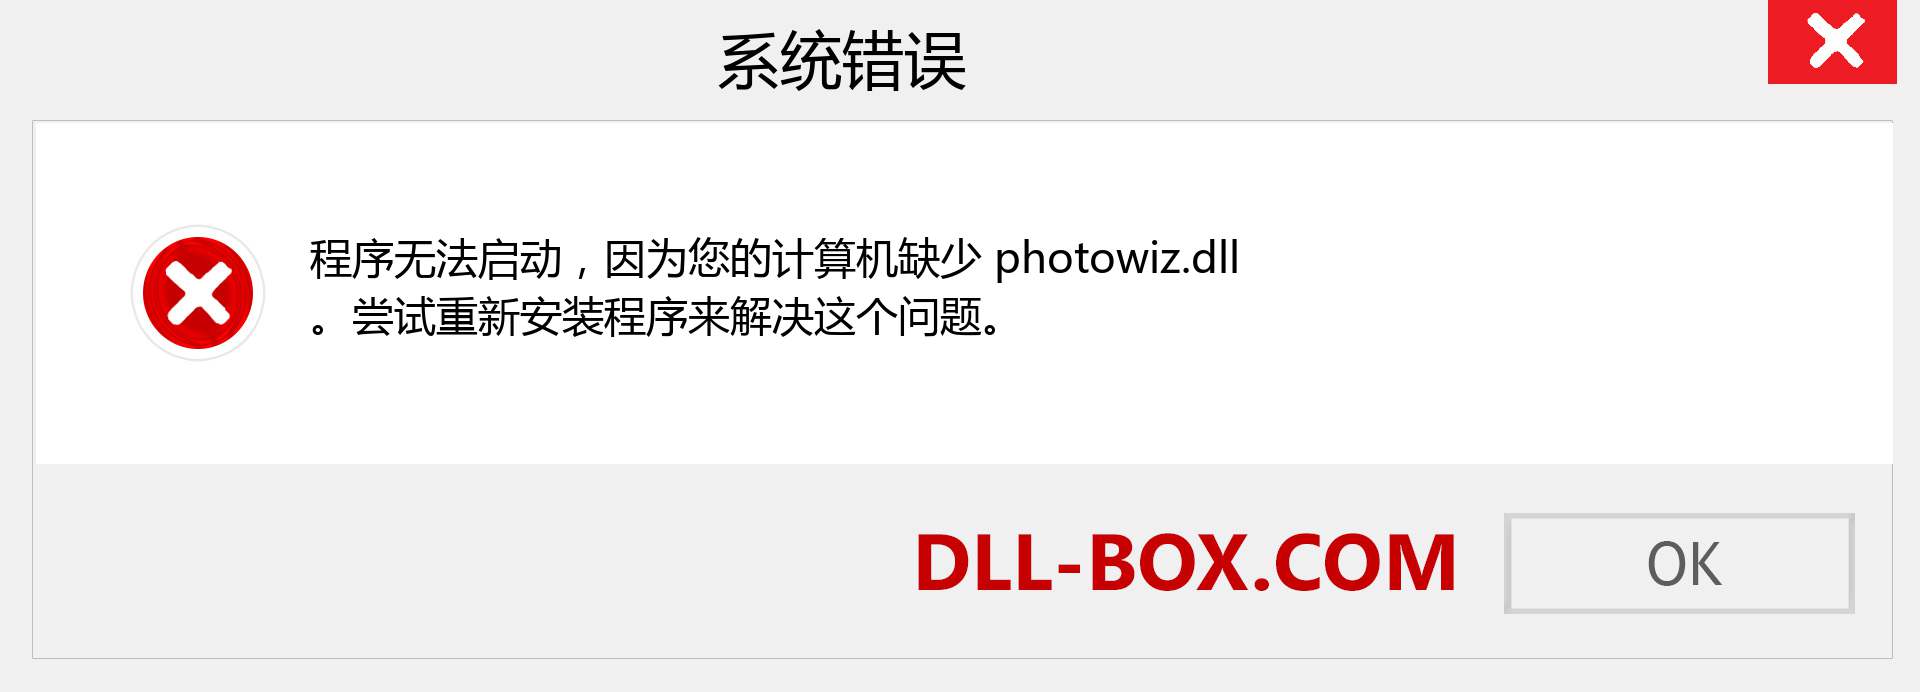 photowiz.dll 文件丢失？。 适用于 Windows 7、8、10 的下载 - 修复 Windows、照片、图像上的 photowiz dll 丢失错误